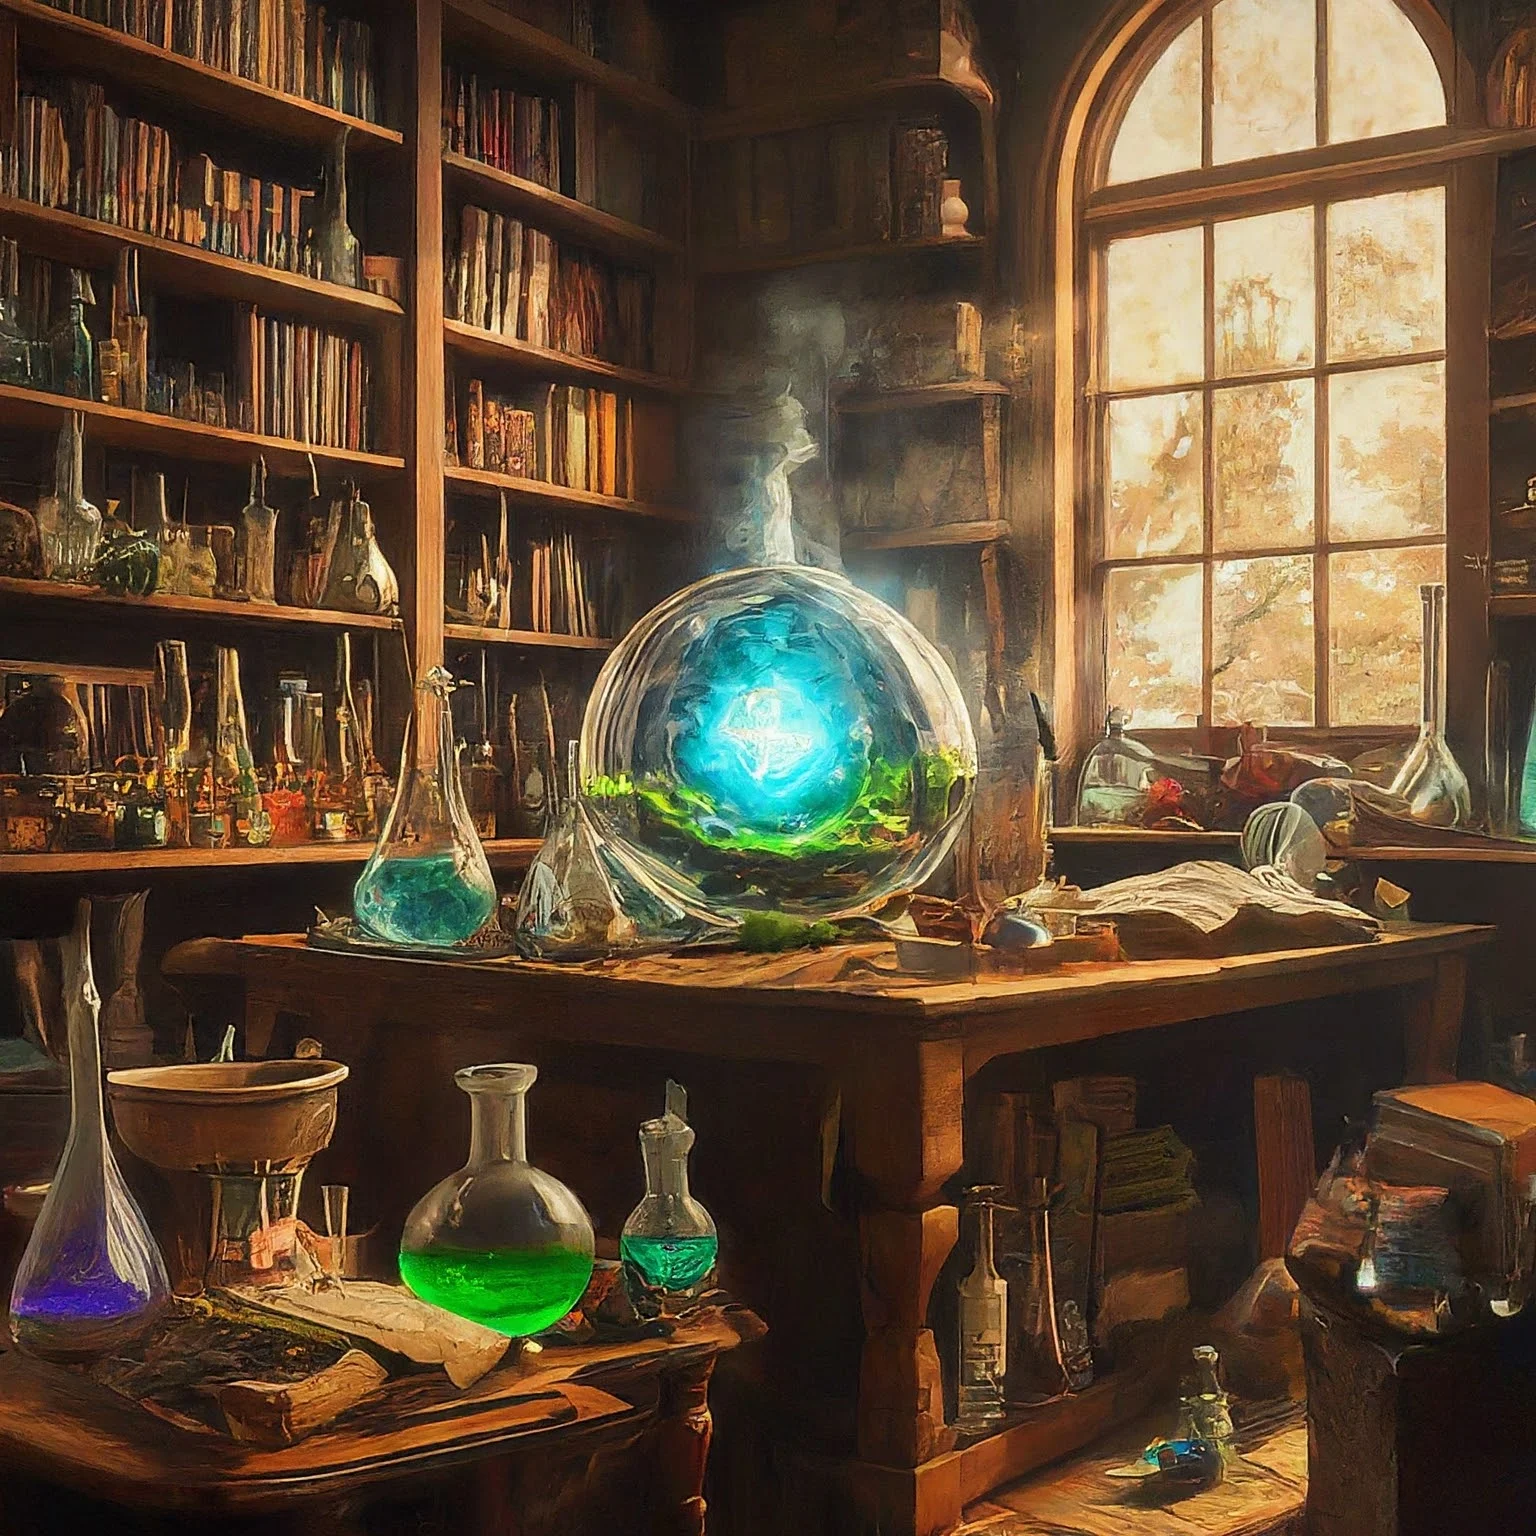 Un laboratorio de química con frascos de colores alrededor de la mesa, una estantería al fondo y luz asomándose por una ventana.